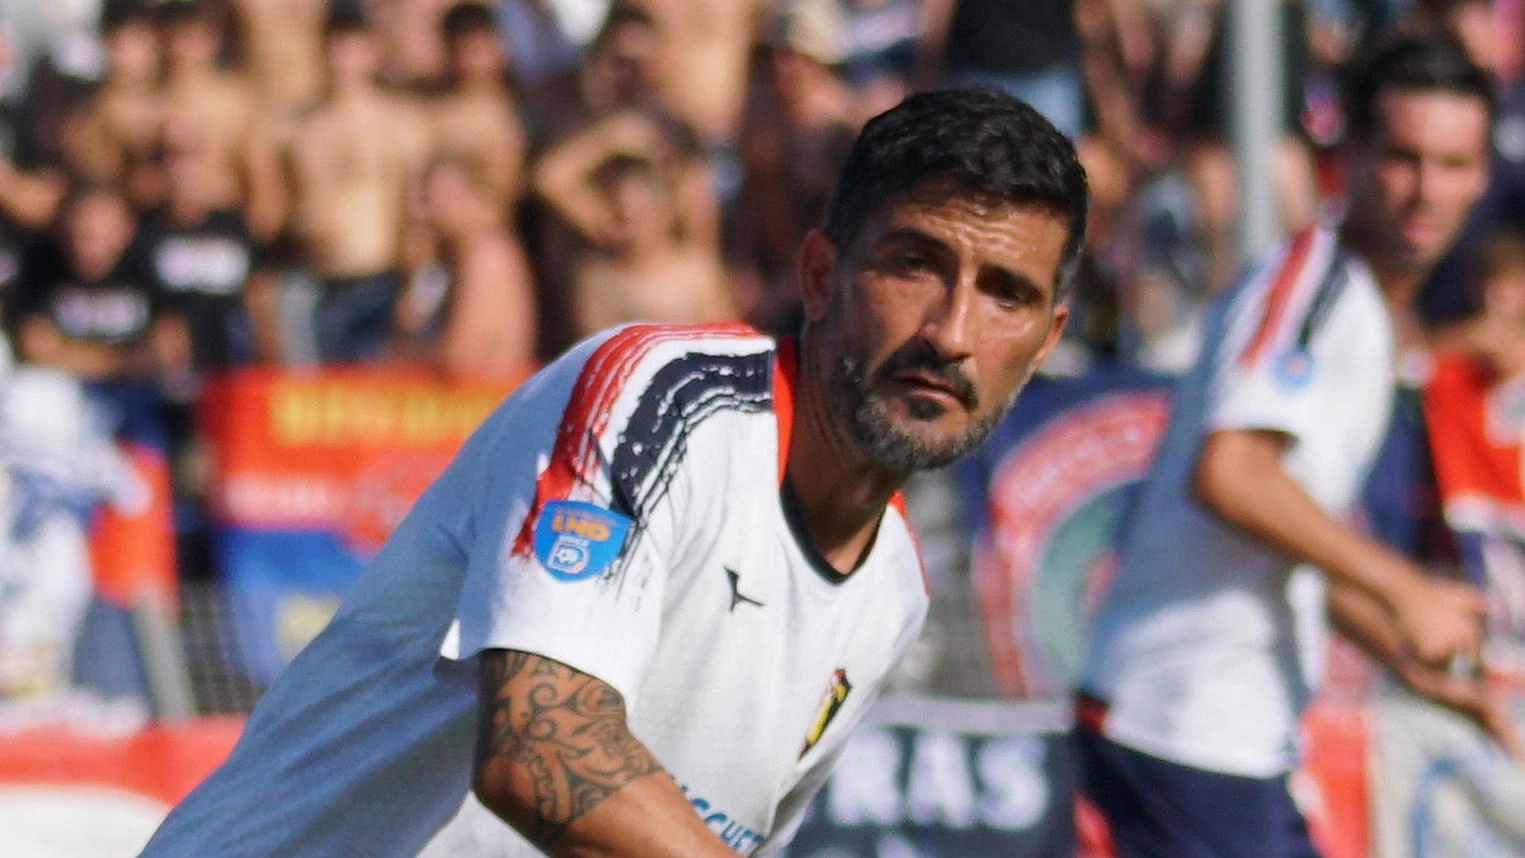 Loris Beoni ritrova il calciatore Federico Conti all'Aquila dopo 10 anni. Conti, ora chioccia per i giovani, recupera forma fisica e punta alla salvezza. Prossimo derby cruciale.